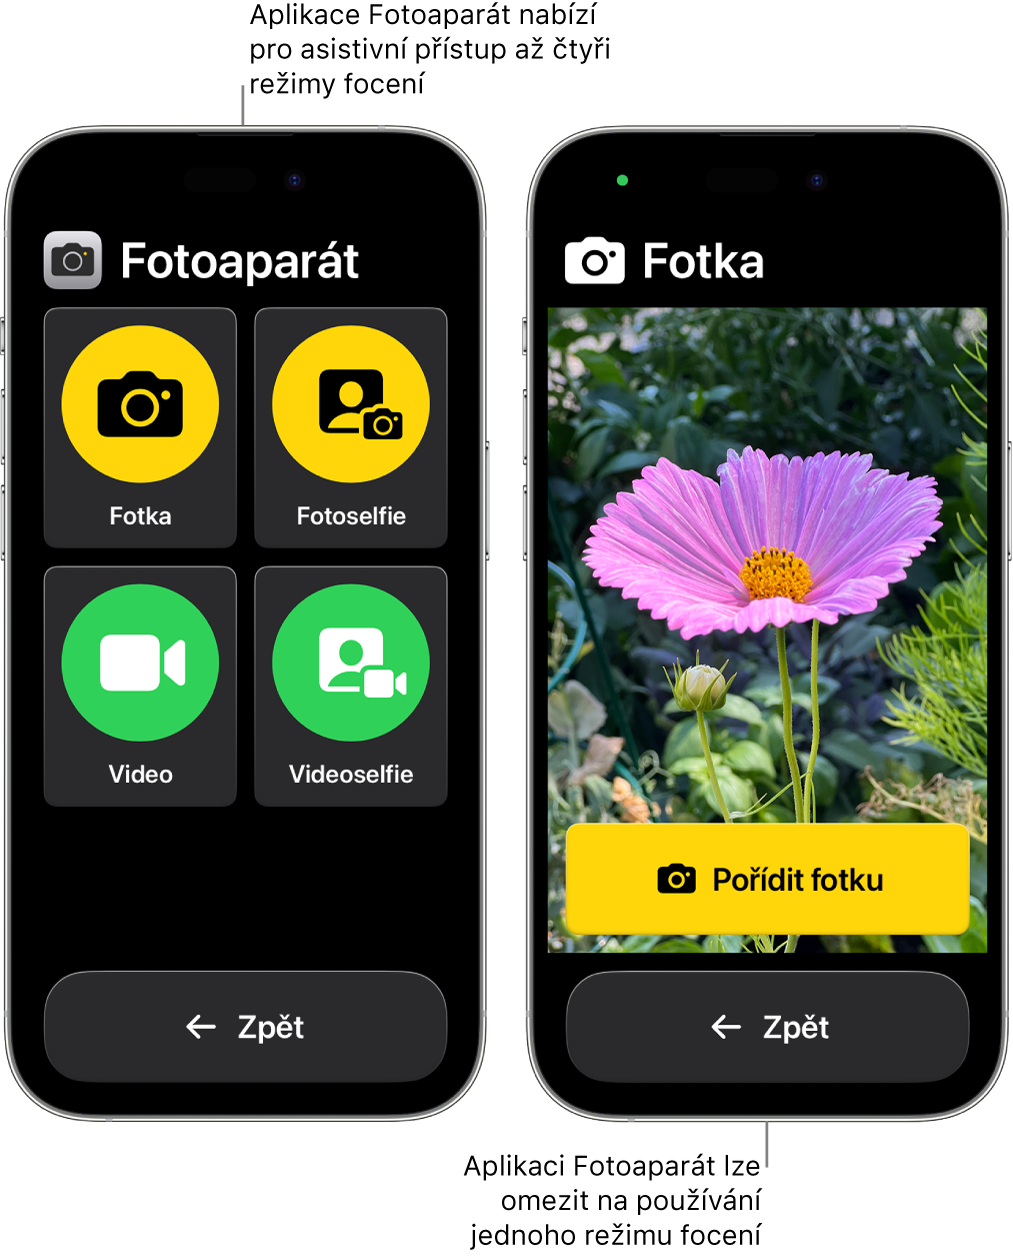 Dva iPhony v asistivním přístupu. Na prvním iPhonu je vidět aplikace Fotoaparát s režimy, které si uživatel může vybrat, například Video nebo Selfie. Na druhém iPhonu je zobrazená aplikace Fotoaparát s jediným režimem pro pořizování fotek.